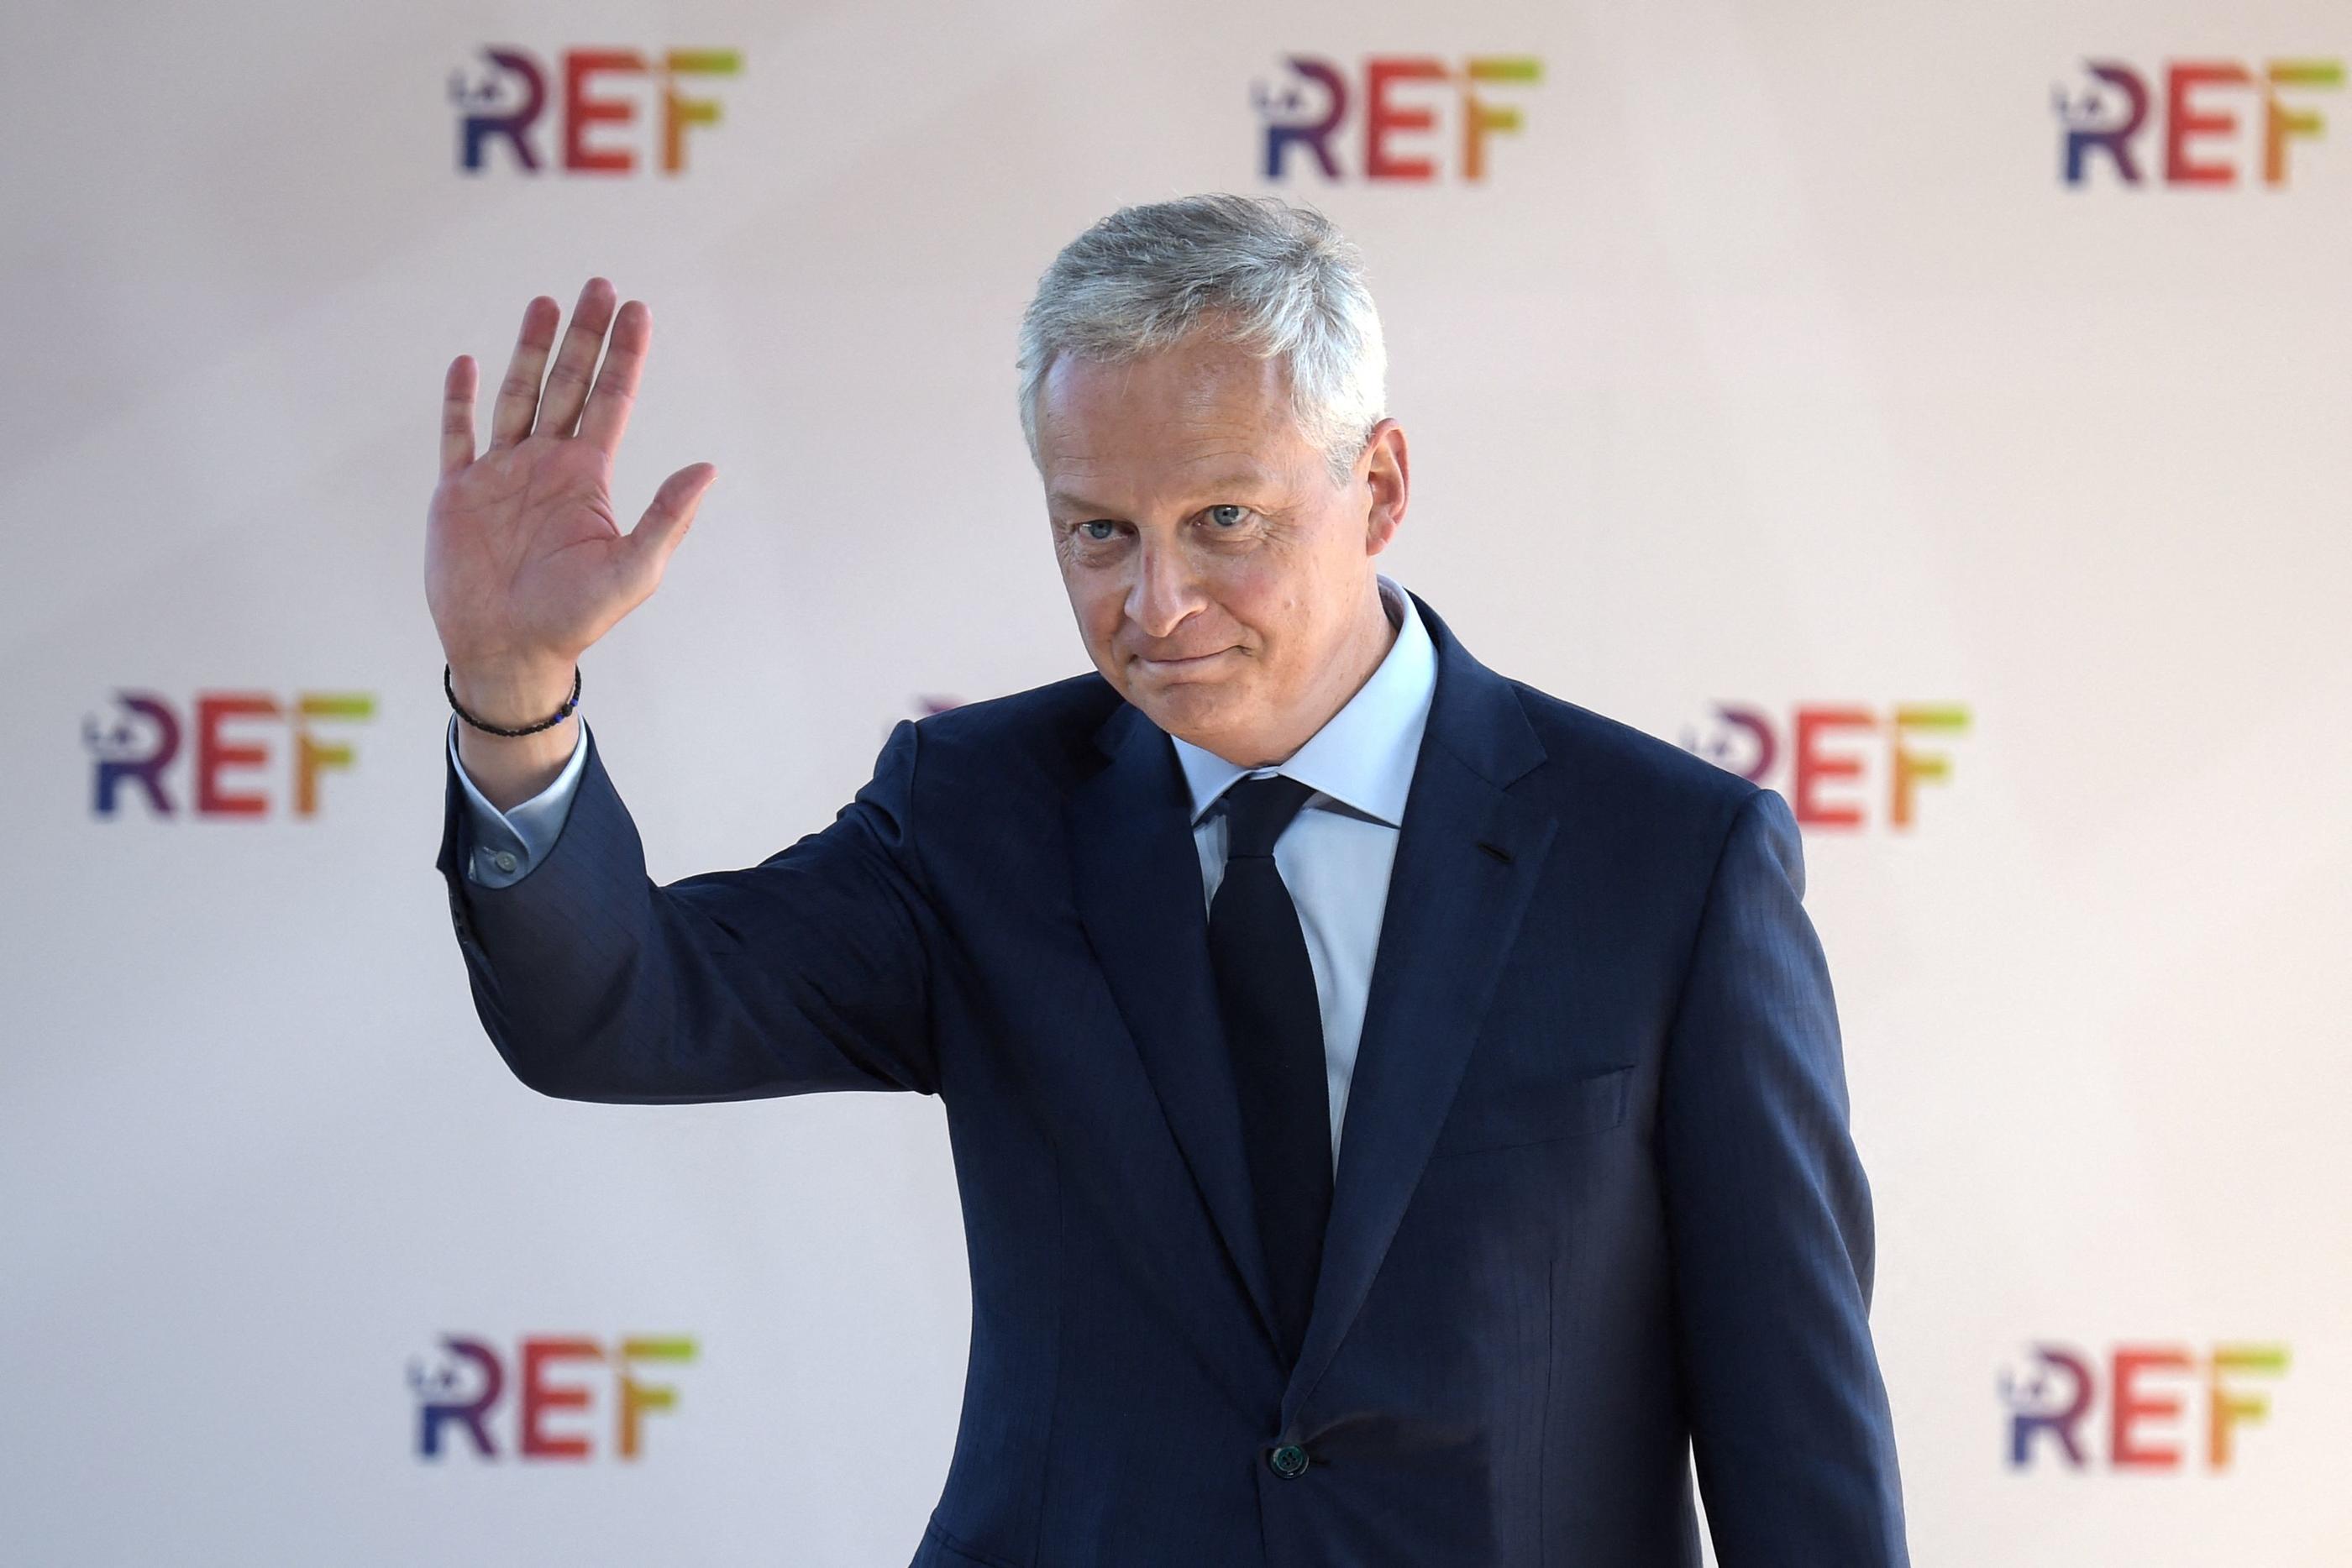 Le ministre de l'Économie, Bruno Le Maire, s'est exprimé ce mercredi lors de la Rencontre des entrepreneurs de France du Medef. AFP/Éric Piermont